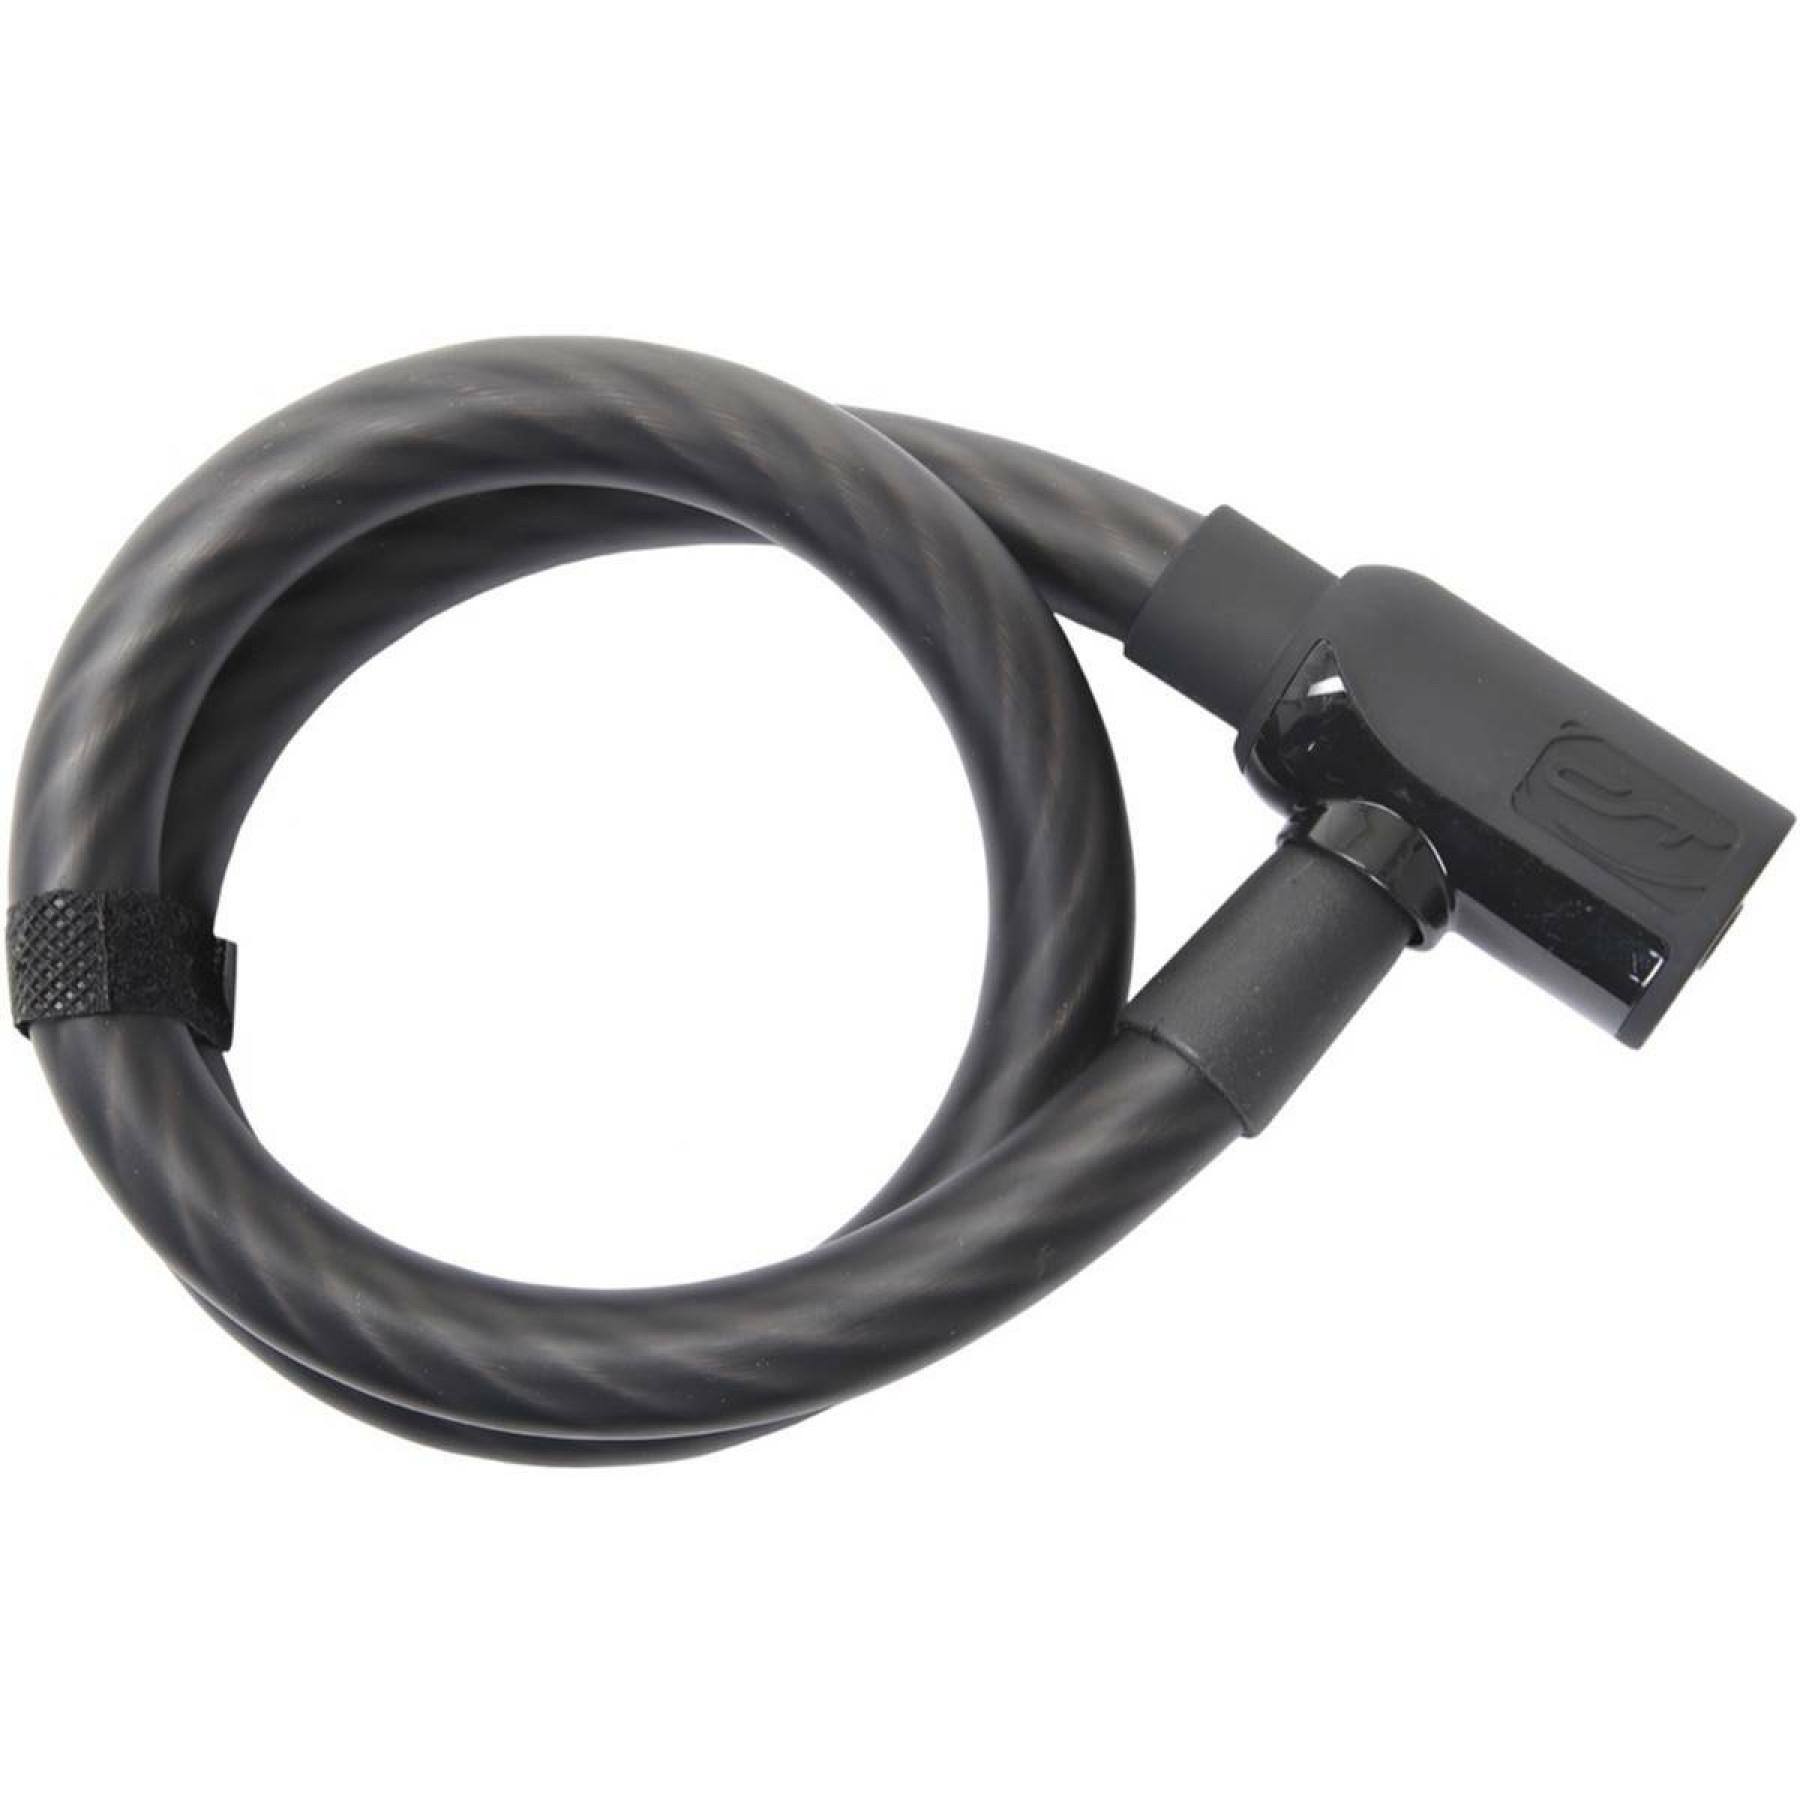 Cable lock Contec Powerloc